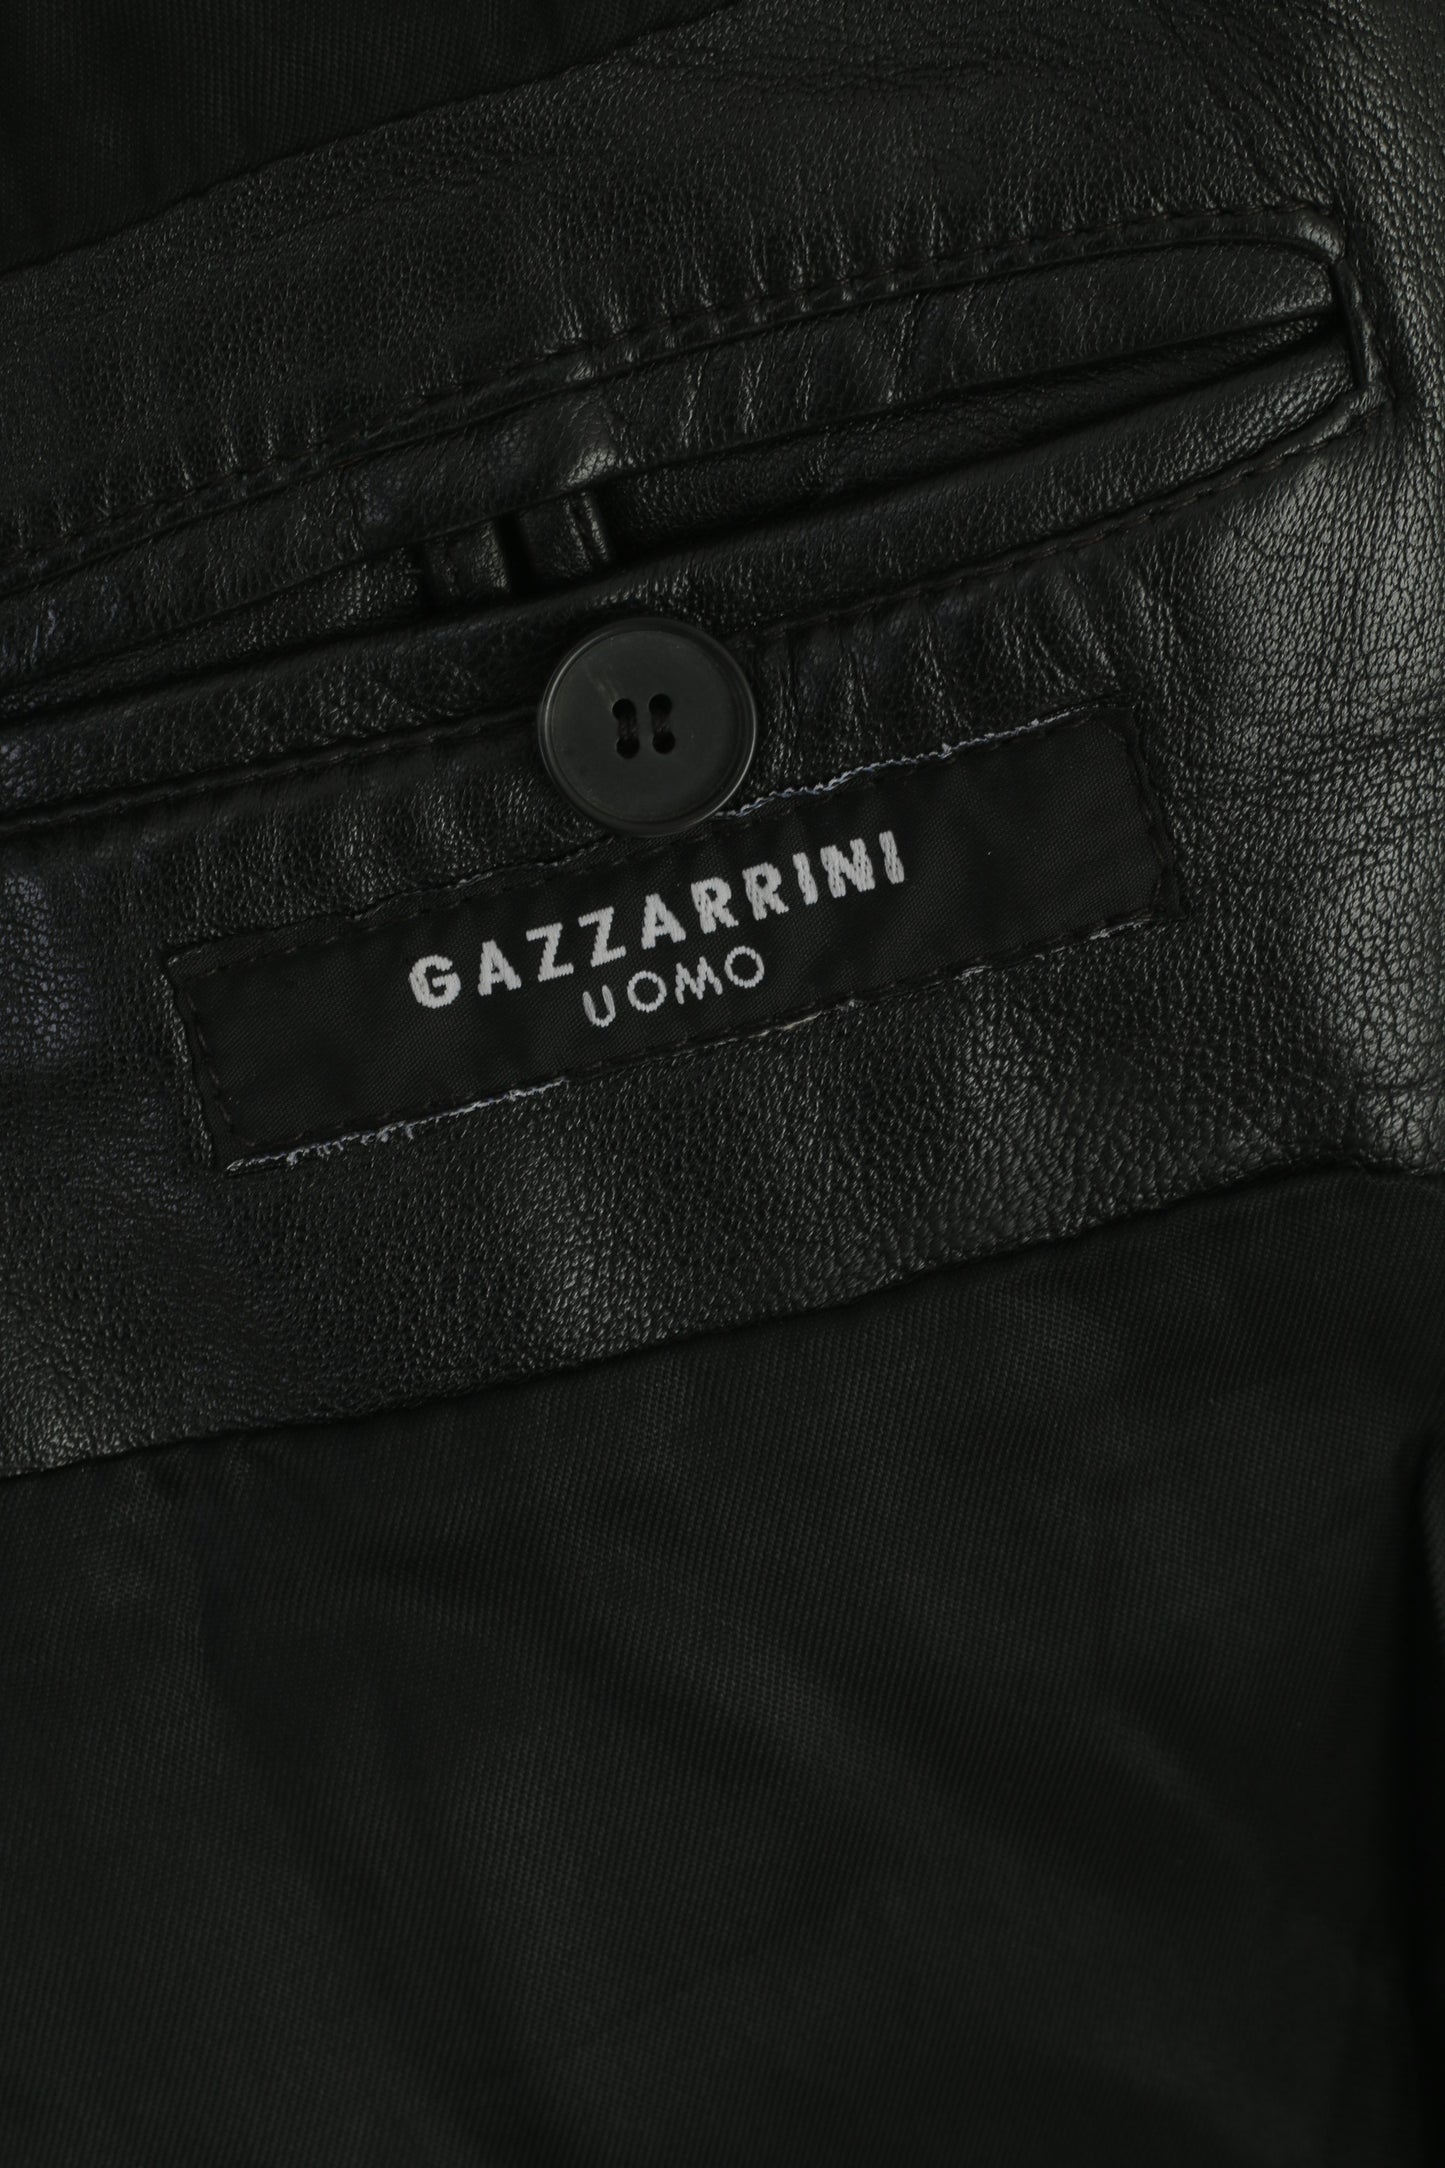 Gazzarrini Uomo Hommes 52 M Veste En Cuir Noir Doux Simple Boutonnage Haut Vintage